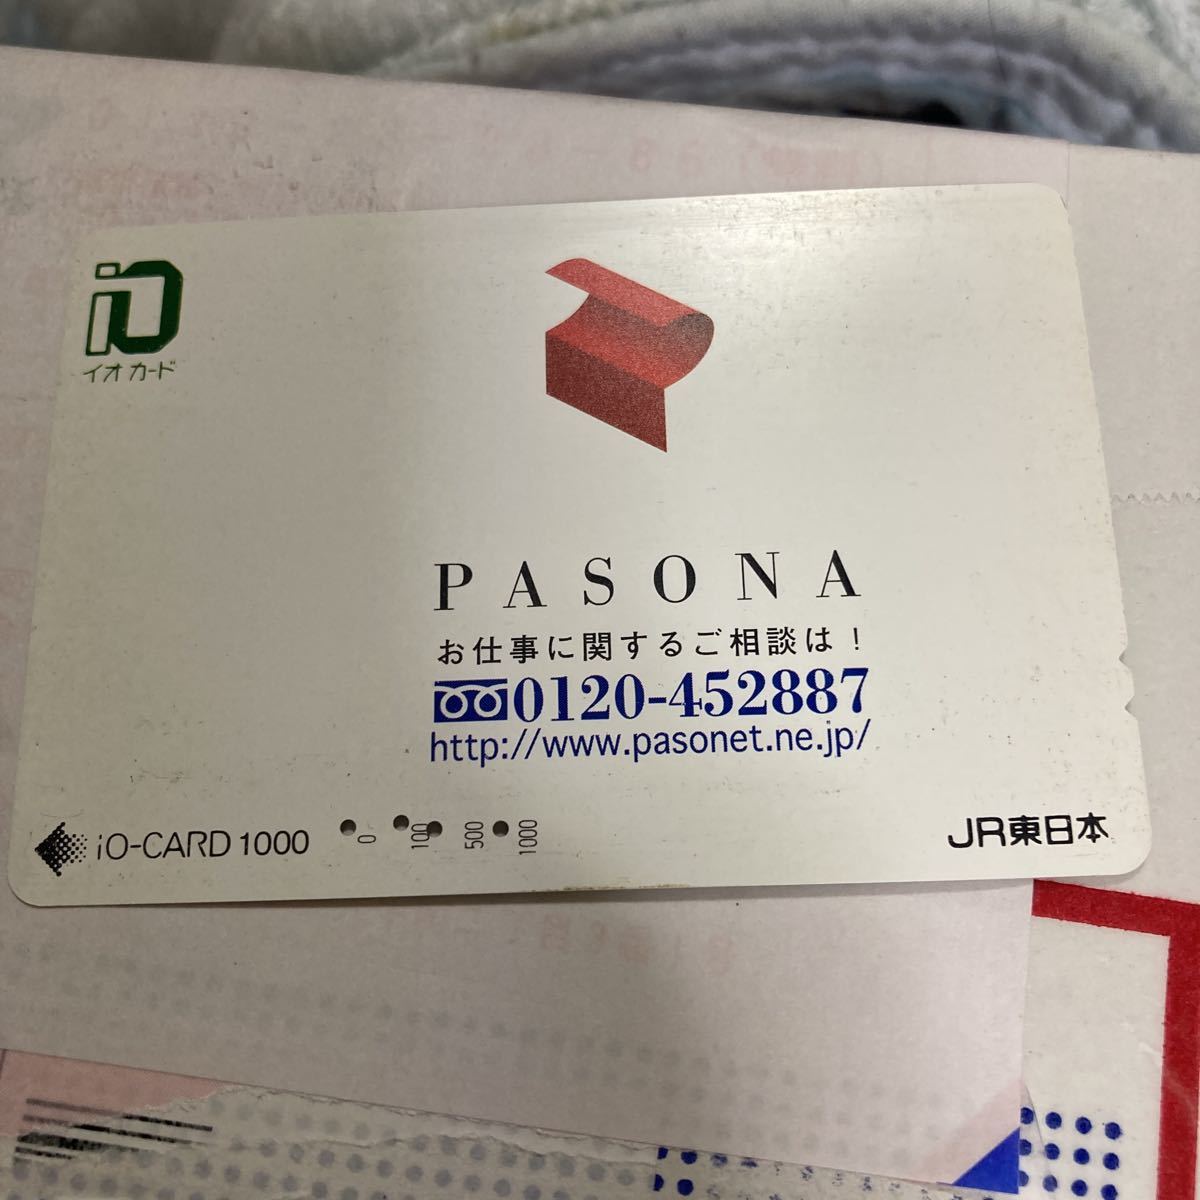  io-card JR Восточная Япония укомплектование временными кадрами индустрия pasona